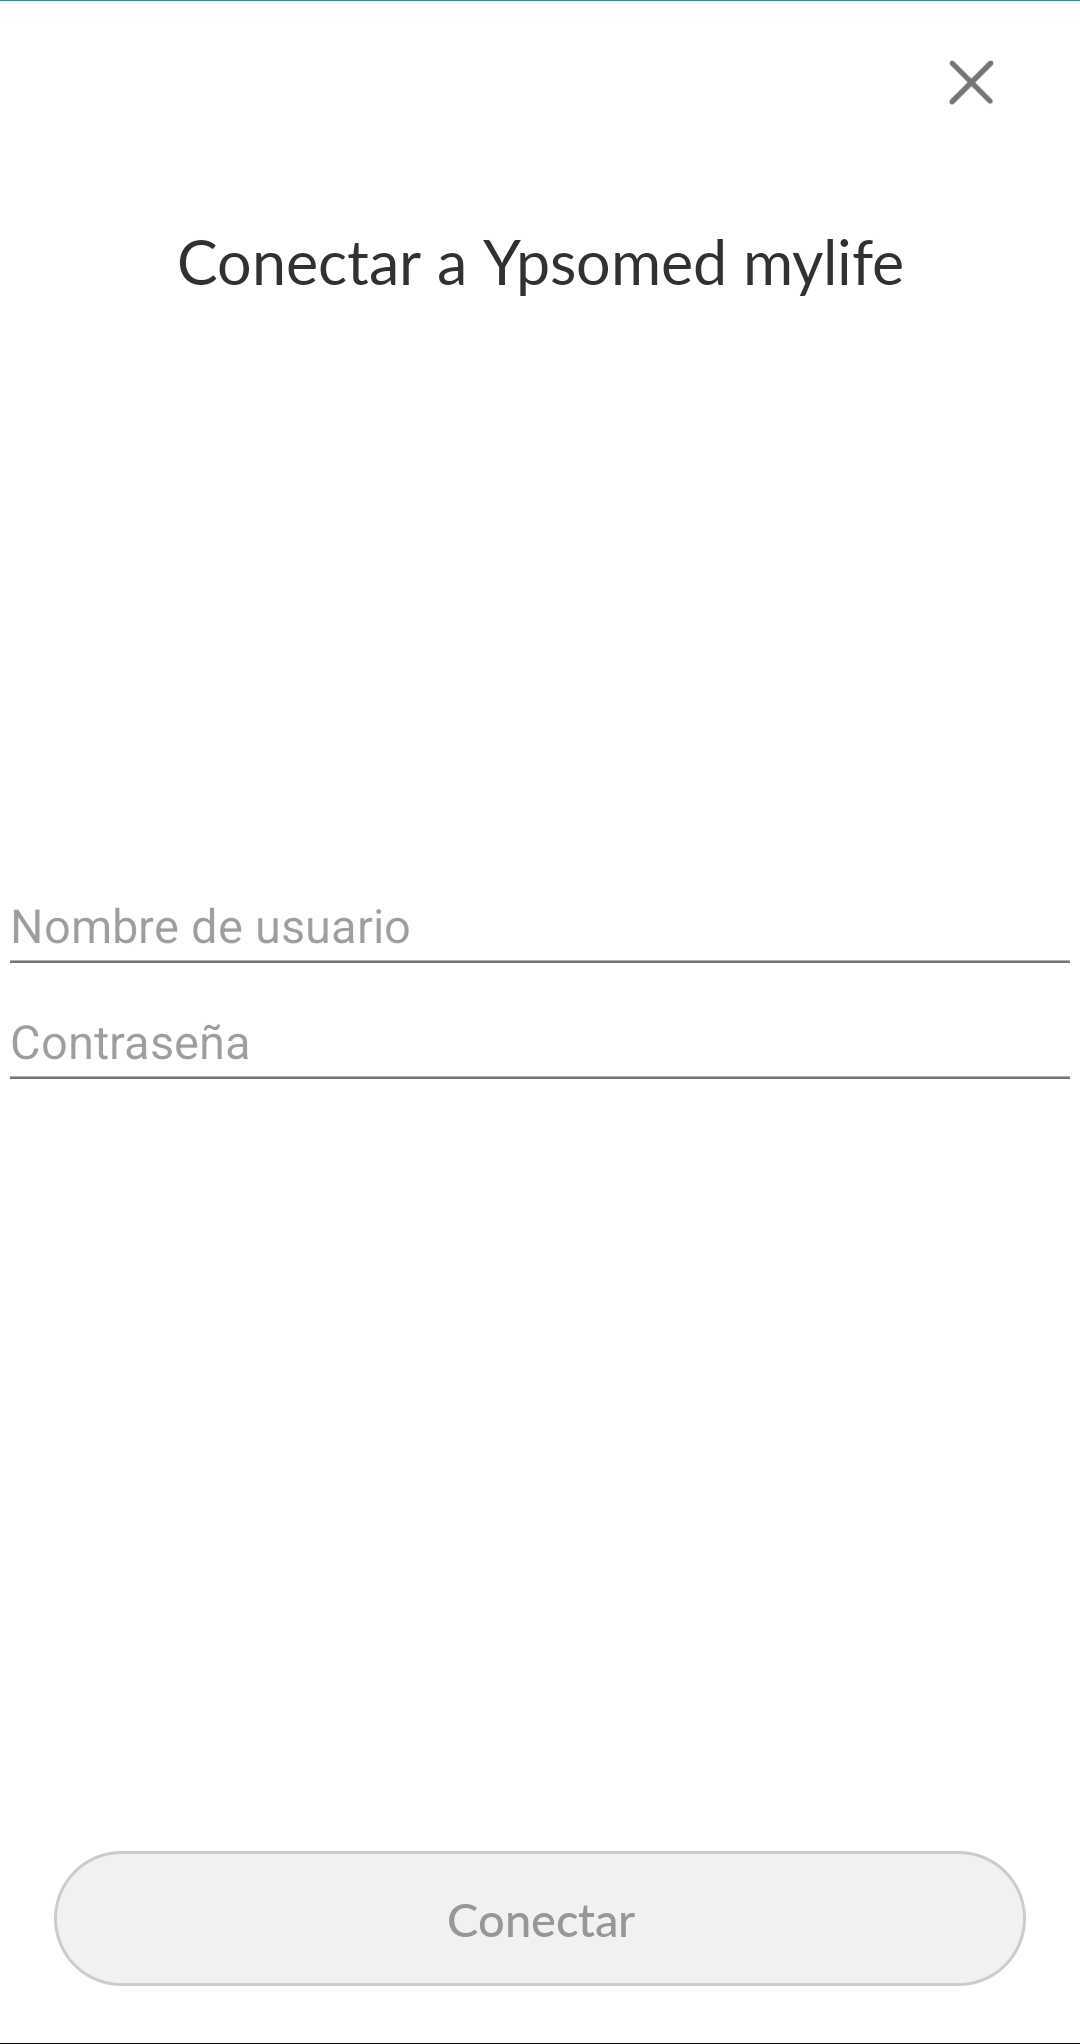 spanish-mobile-mylifecredentials.jpg